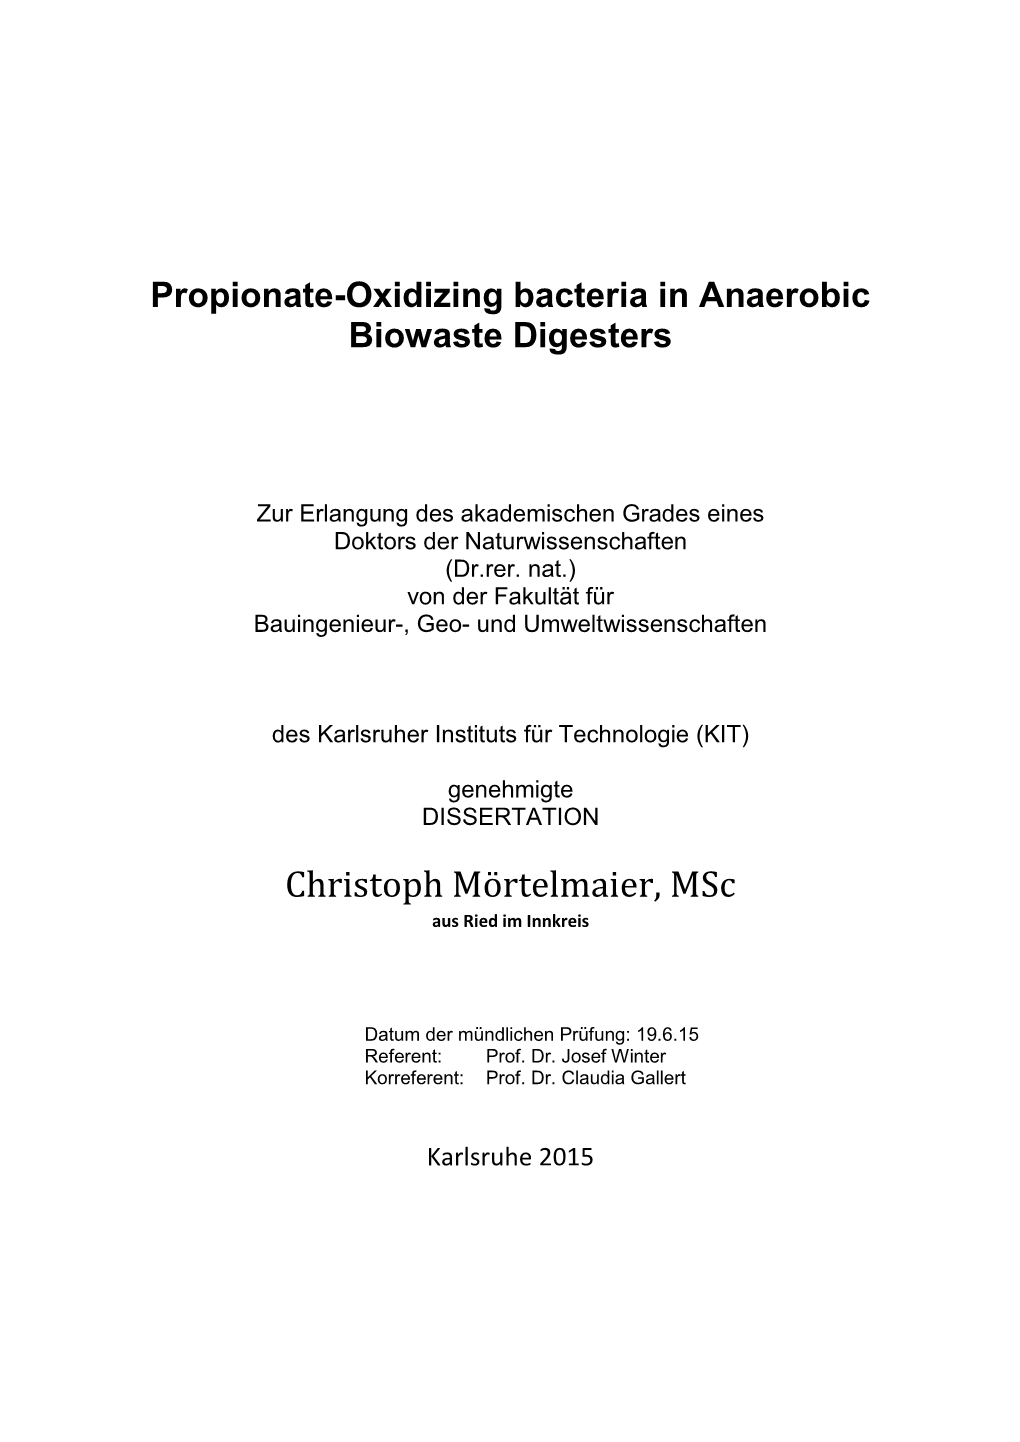 Propionate-Oxidizing Bacteria in Anaerobic Biowaste Digesters